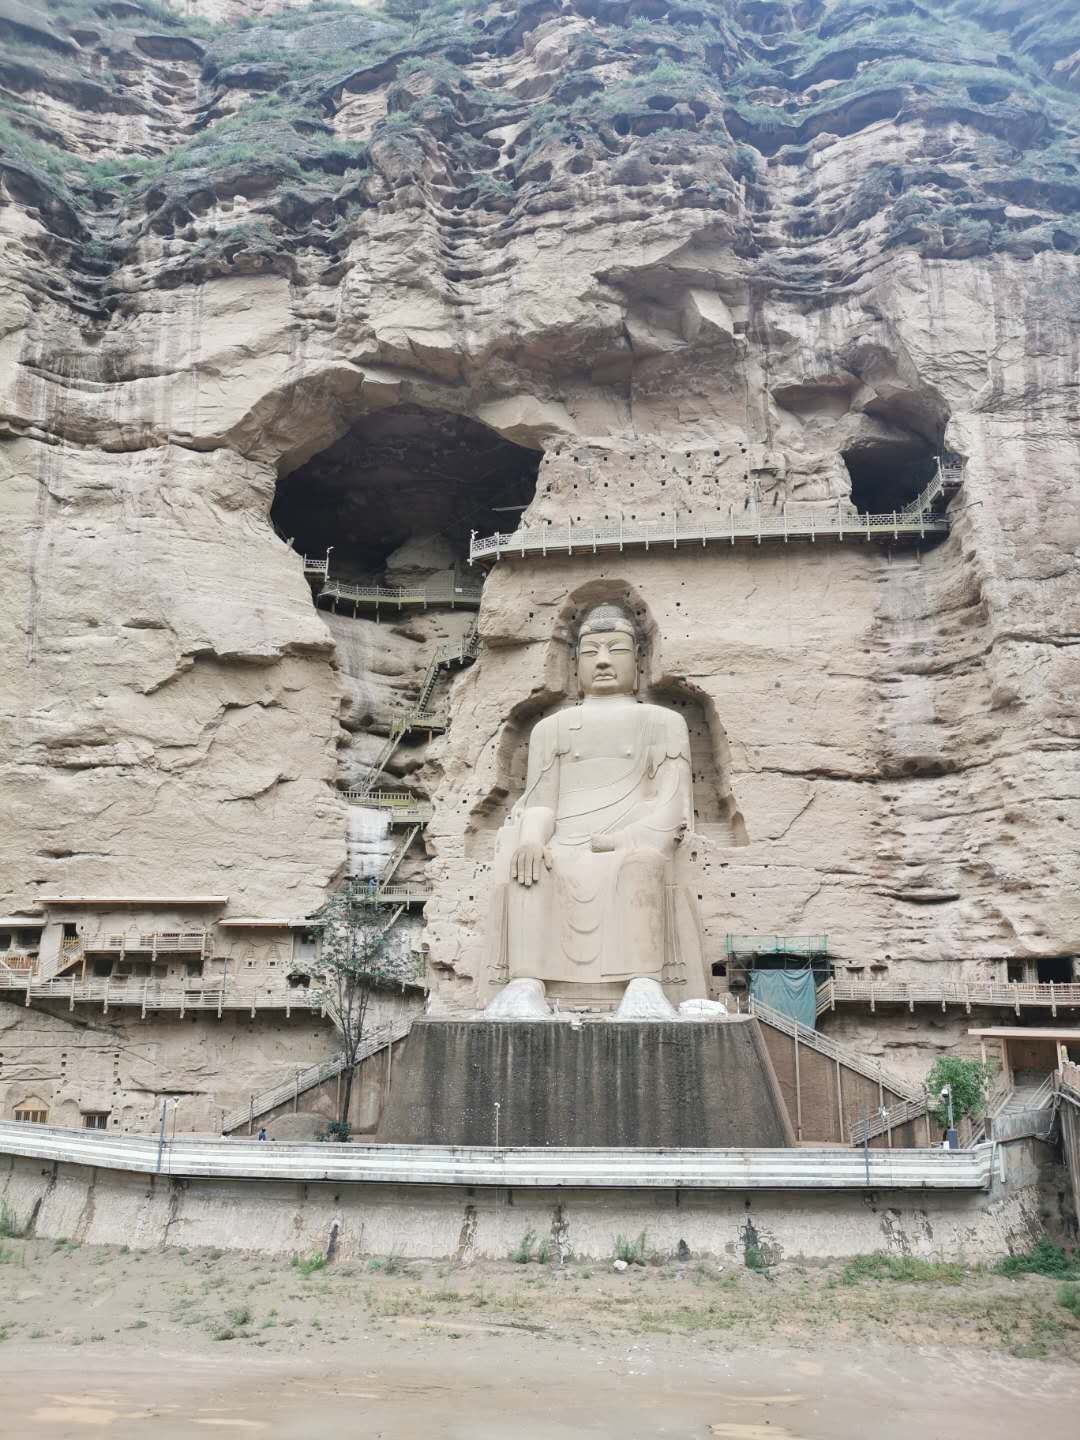 炳灵寺世界文化遗产旅游区